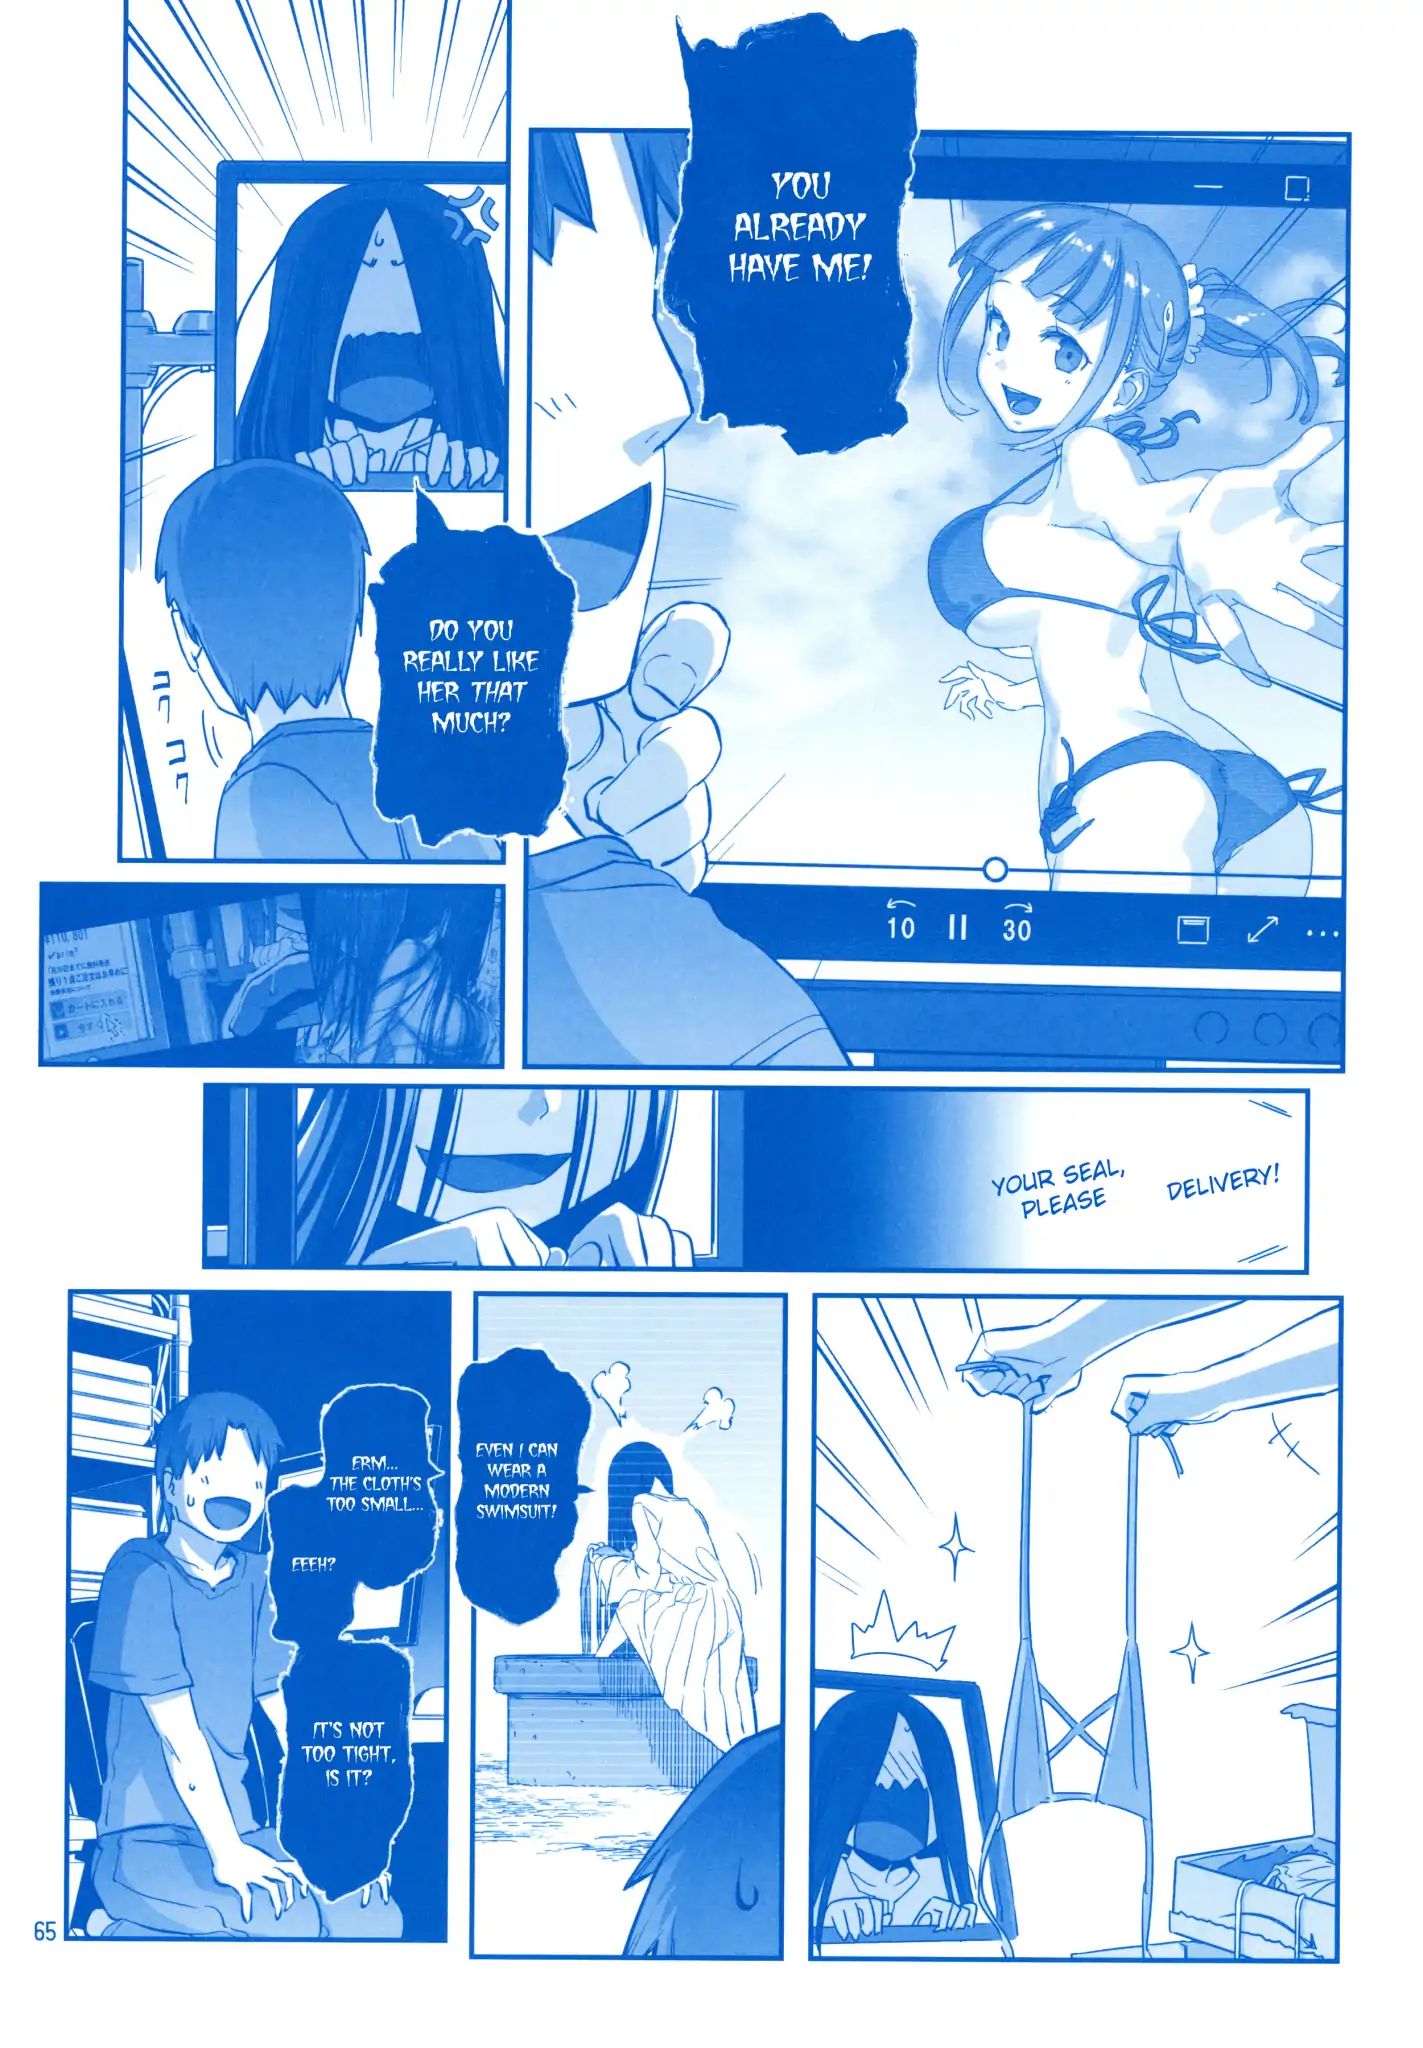 Read Getsuyoubi no Tawawa Manga English [All Chapters] Online Free -  MangaKomi